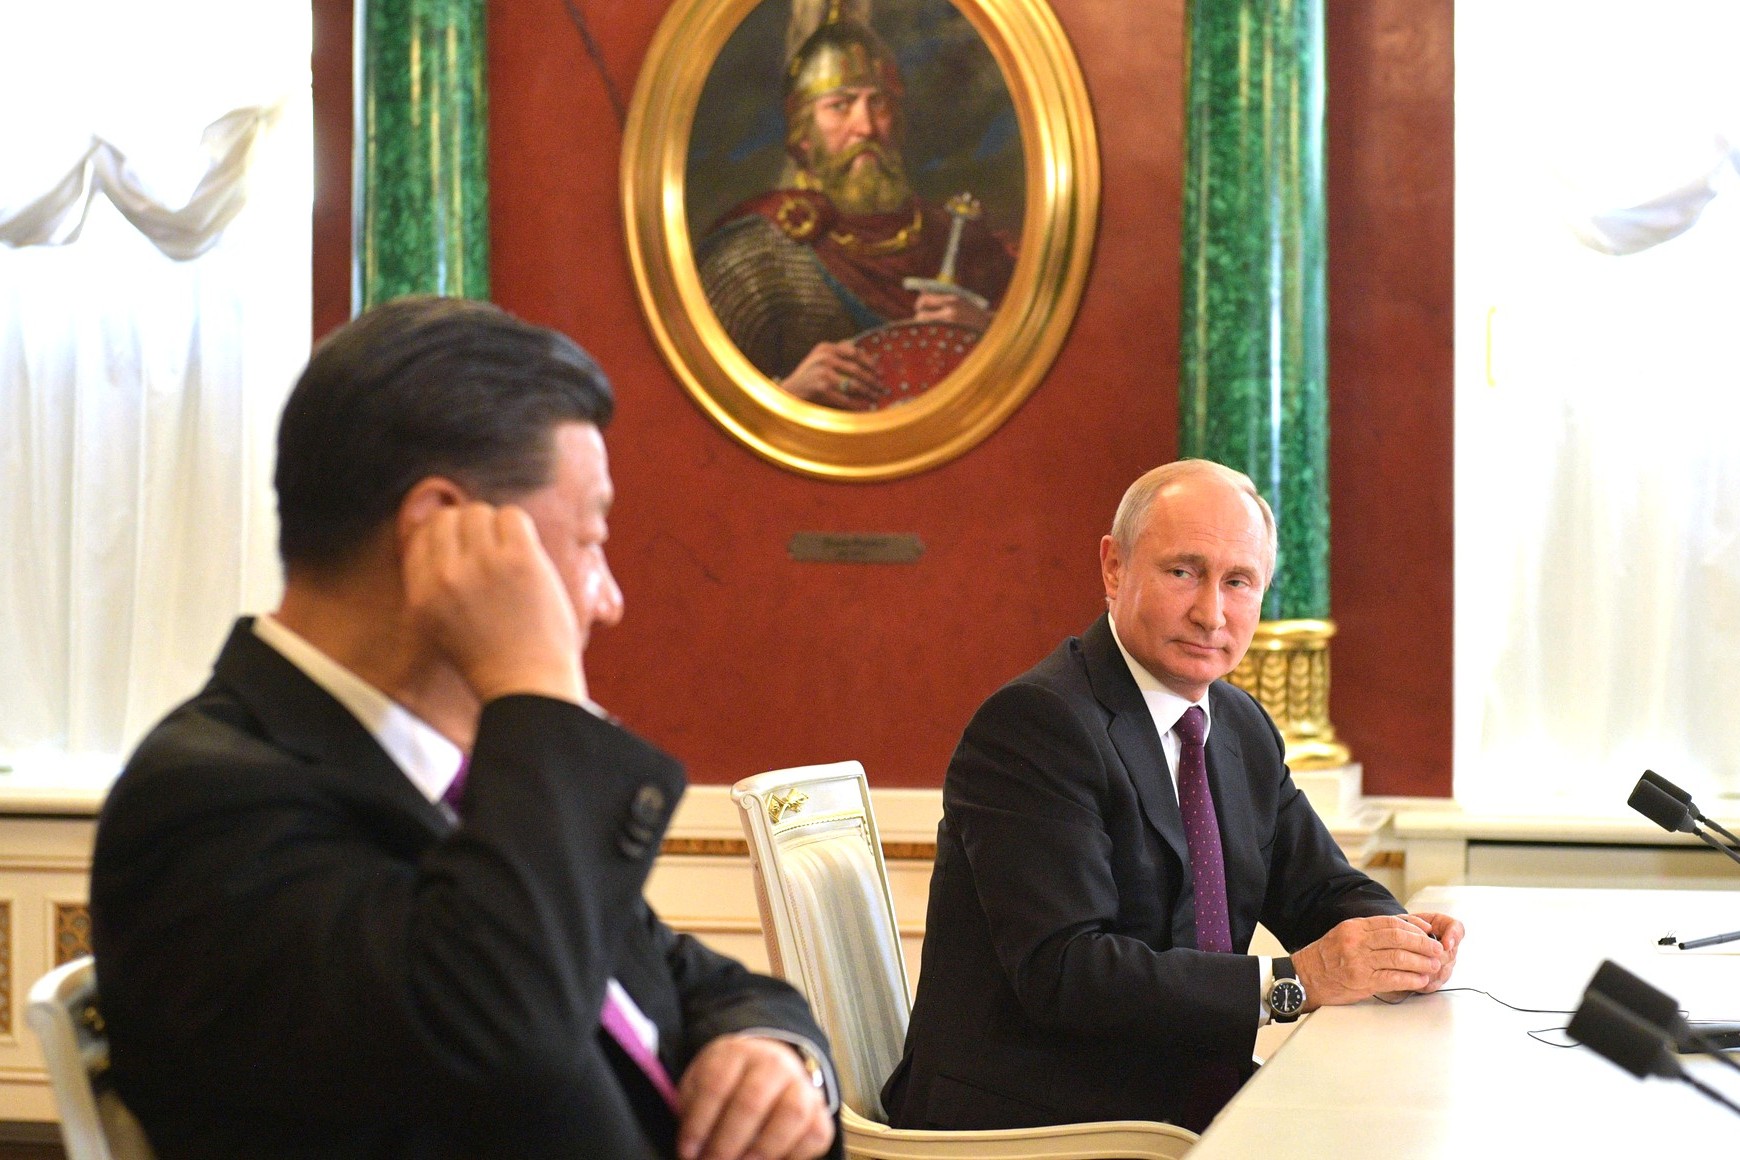 Руски председник Владимир Путин током састанка са кинеским председником Сијем Ђинпингом у Кремљу, Москва, 05. јун 2019. (Фото: kremlin.ru)